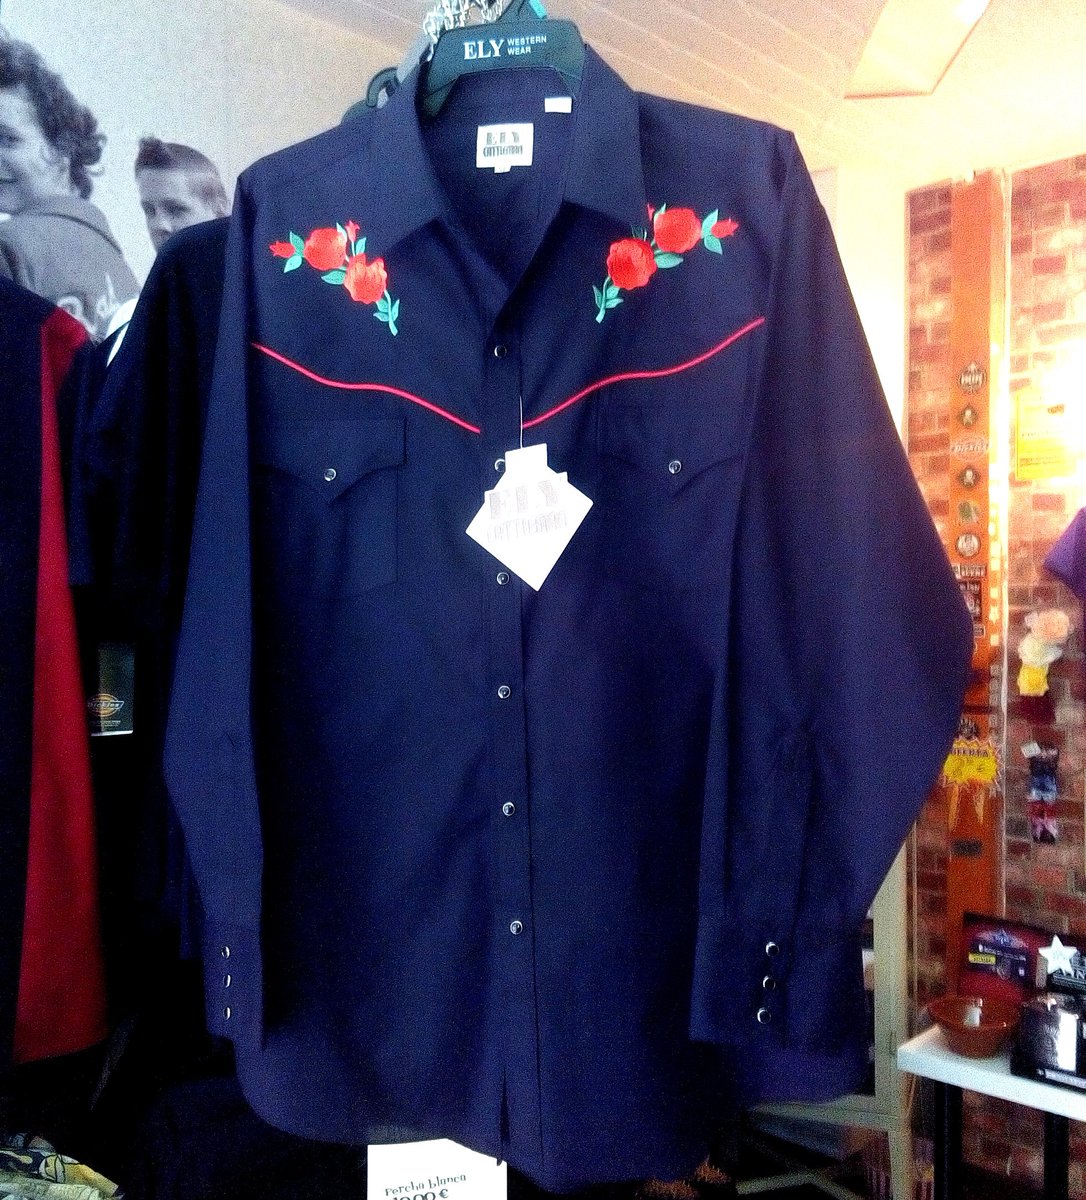 Maldición triple Comenzar Rocket Carabanchel on Twitter: "🤠 Nos están llegando nuevas camisas  western, y esta particularmente nos encanta: Red Rose, de la marca Ely  &amp; Walker Cattleman +info: https://t.co/uXZBQGdyho #Western #Country  #Cowboy #Rockabilly #Madrid #